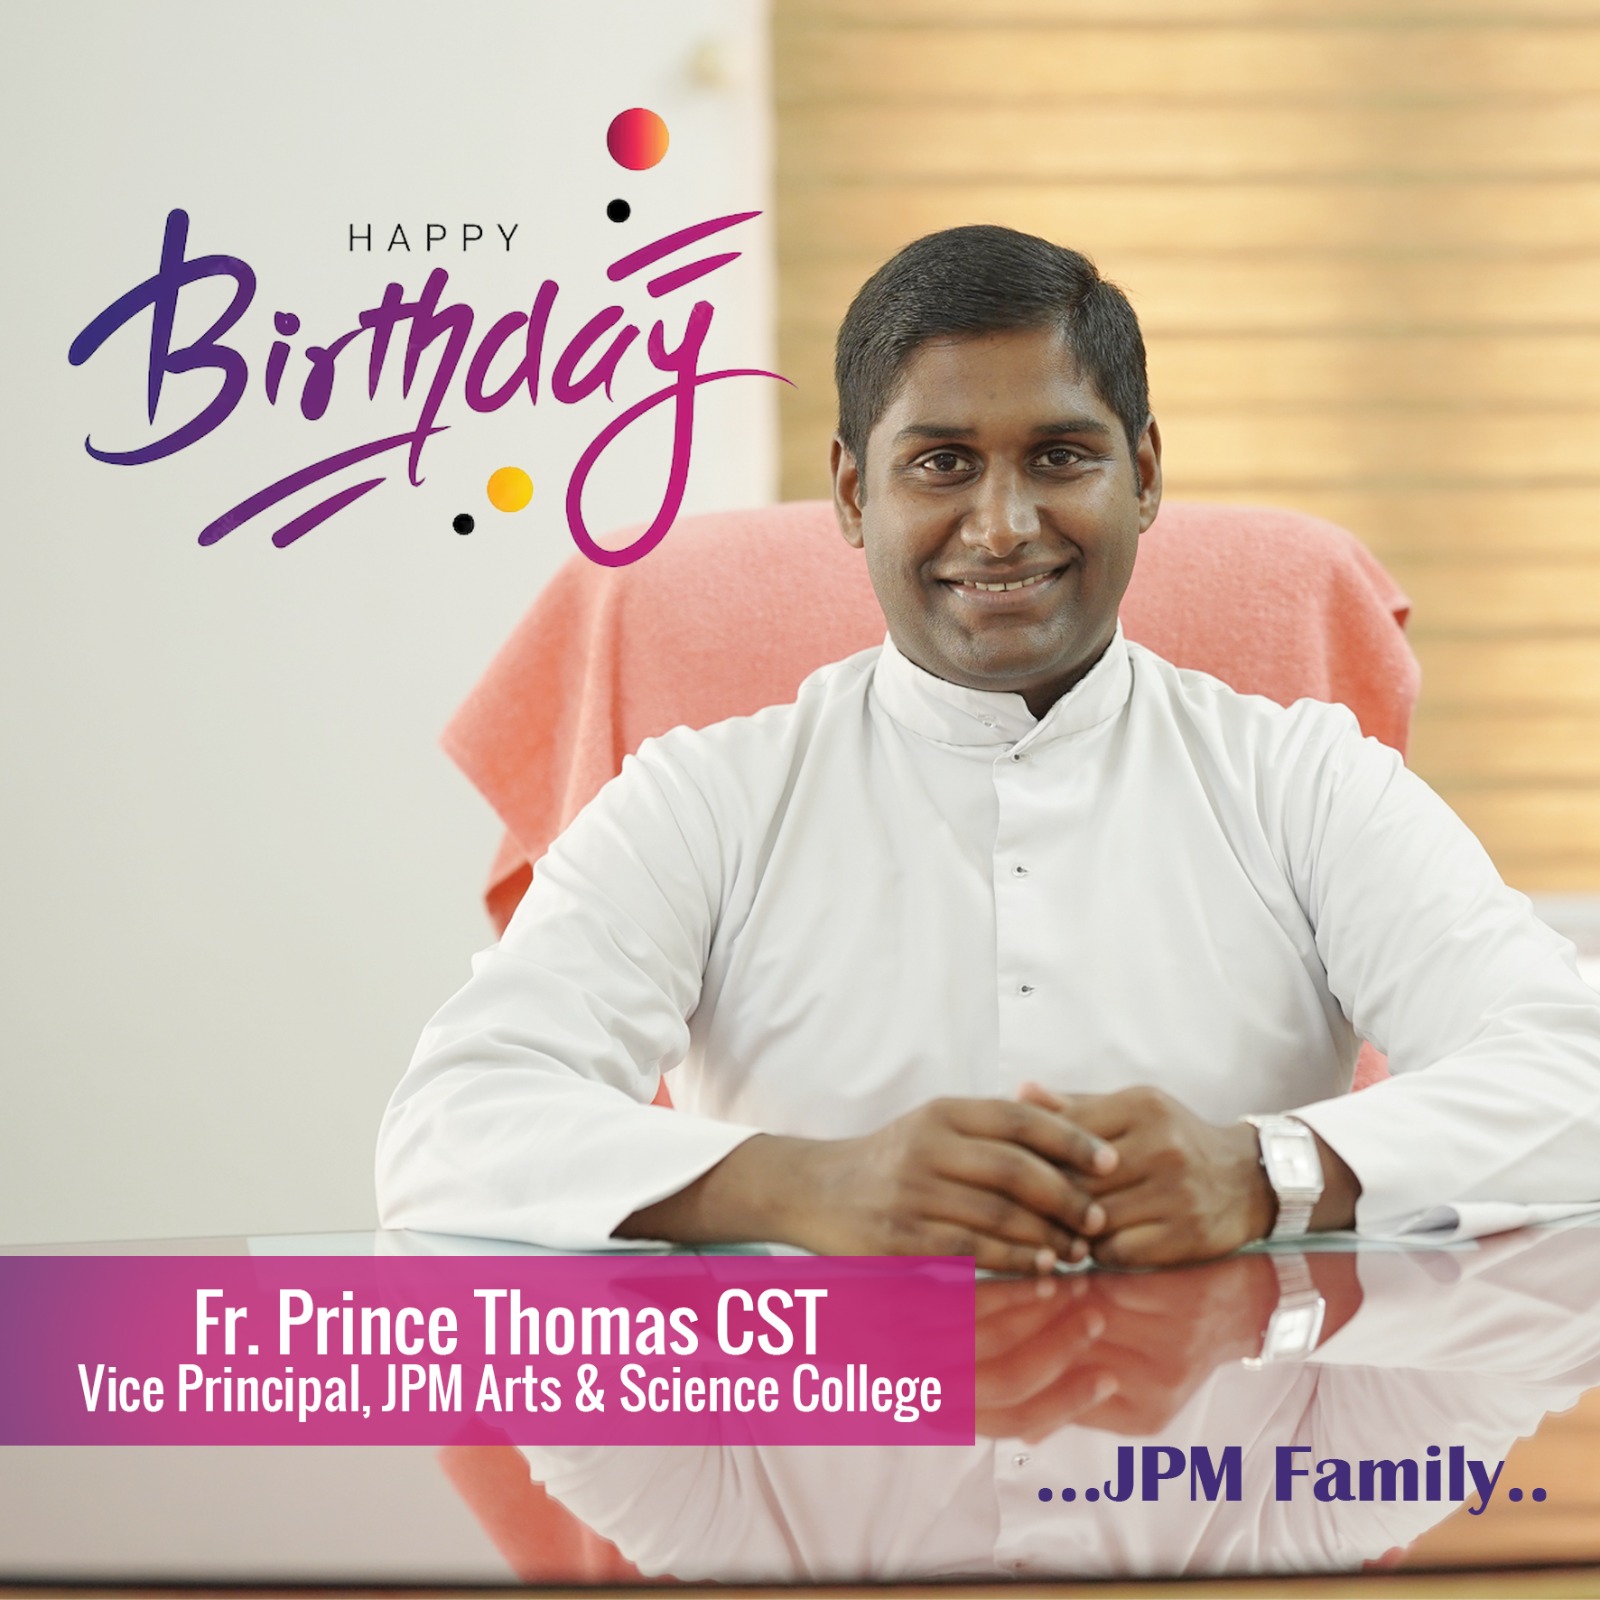 Happy birthday Dear vice principal